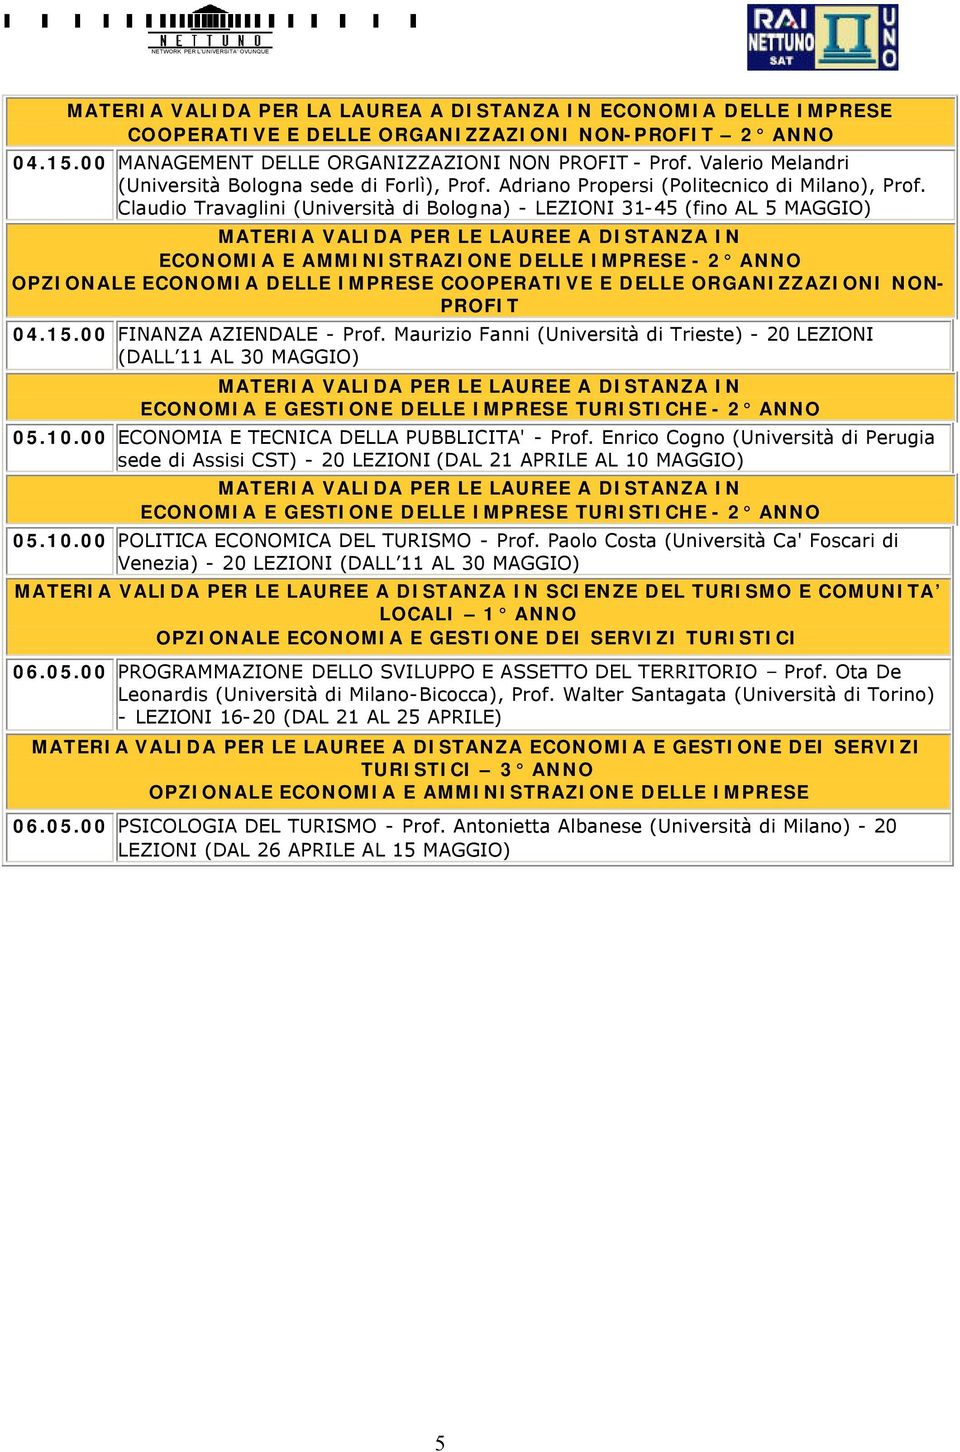 Claudio Travaglini (Università di Bologna) - LEZIONI 31-45 (fino AL 5 MAGGIO) ECONOMIA E AMMINISTRAZIONE DELLE IMPRESE - 2 OPZIONALE ECONOMIA DELLE IMPRESE COOPERATIVE E DELLE ORGANIZZAZIONI NON-